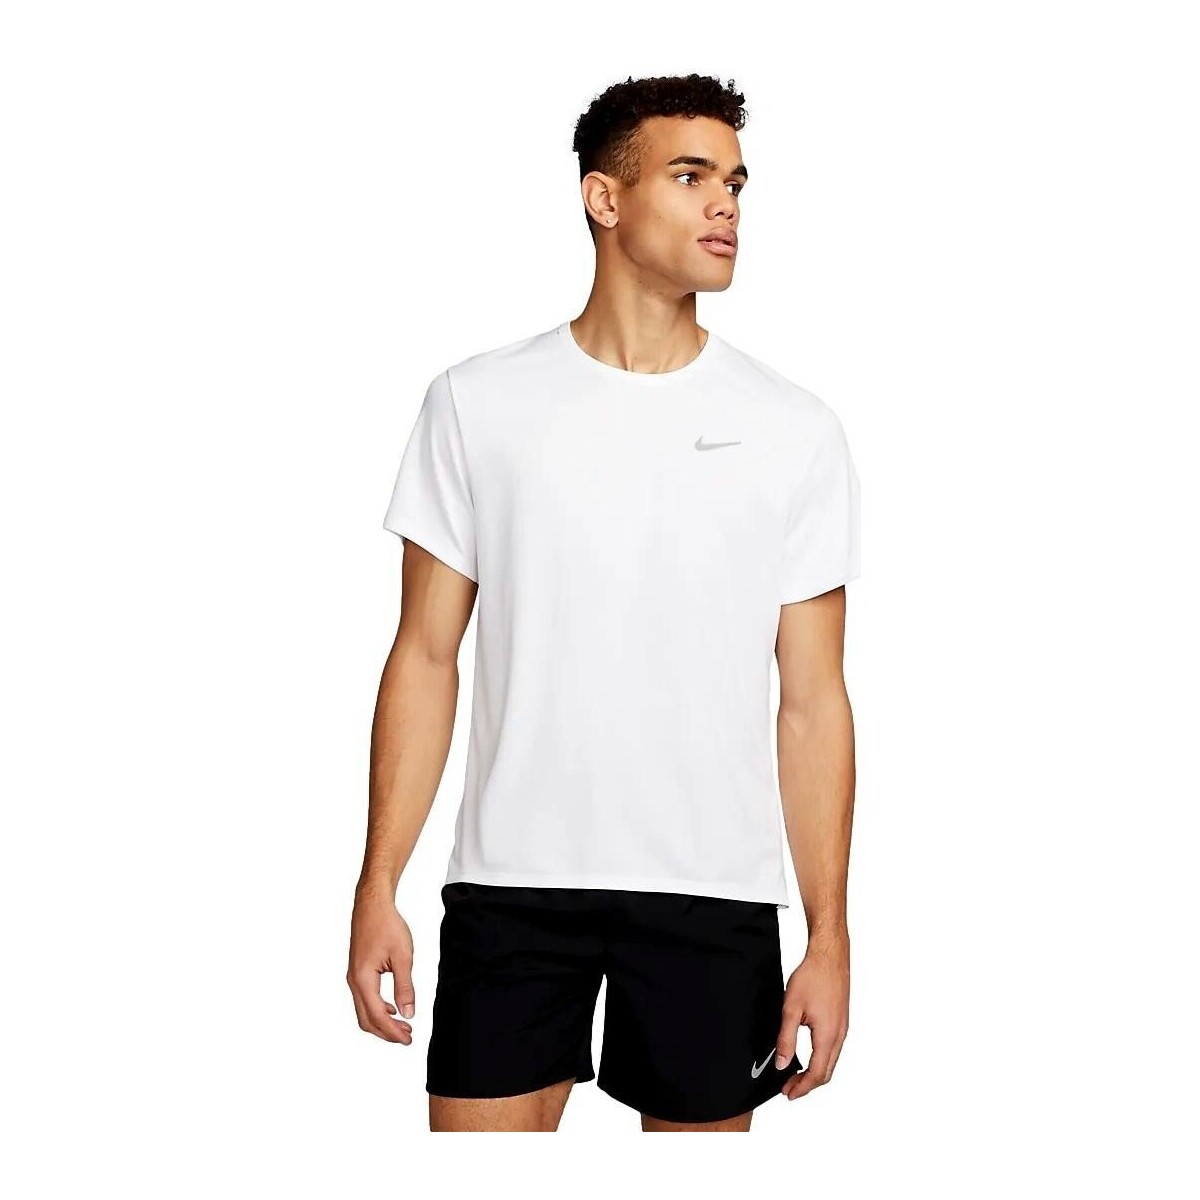 Abbigliamento Uomo T-shirt maniche corte Nike CAMISETA BLANCA HOMBRE  MILER DV9315 Bianco